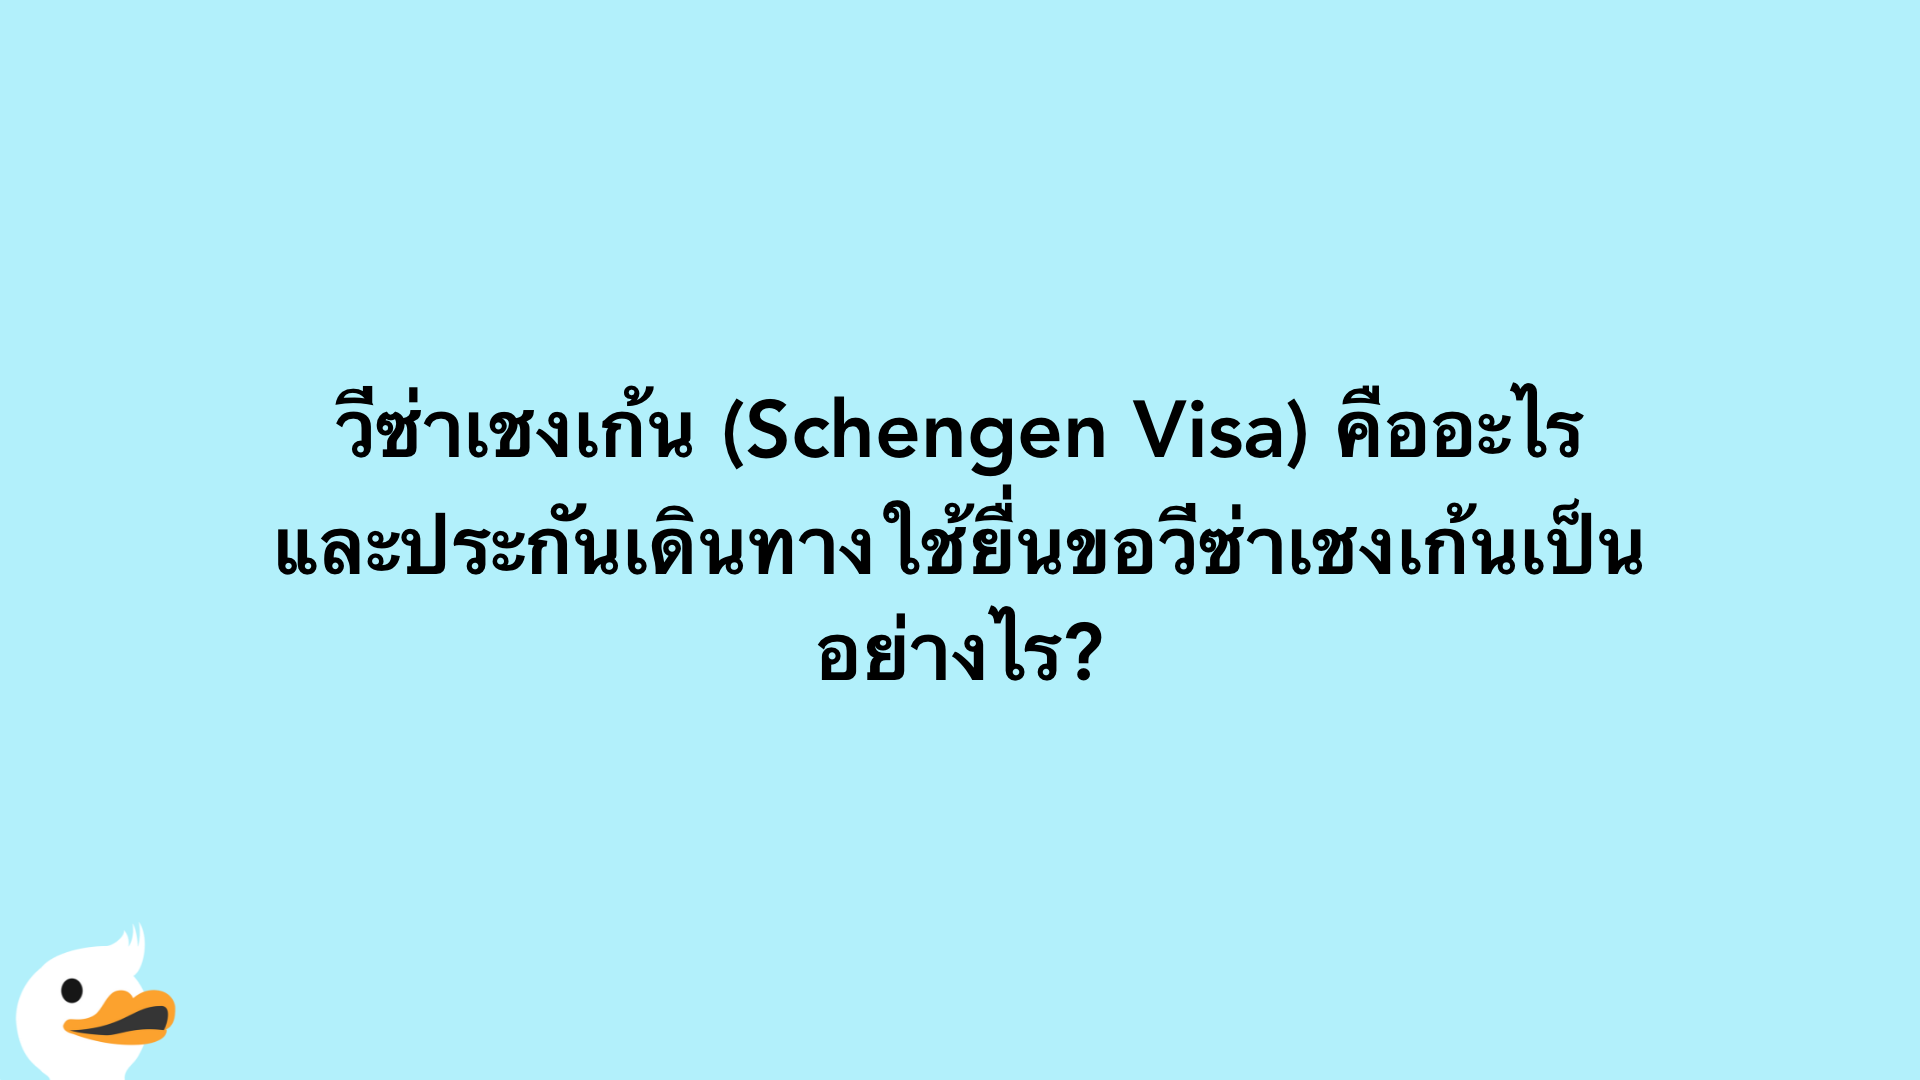 วีซ่าเชงเก้น (Schengen Visa) คืออะไร และประกันเดินทางใช้ยื่นขอวีซ่าเชงเก้นเป็นอย่างไร?